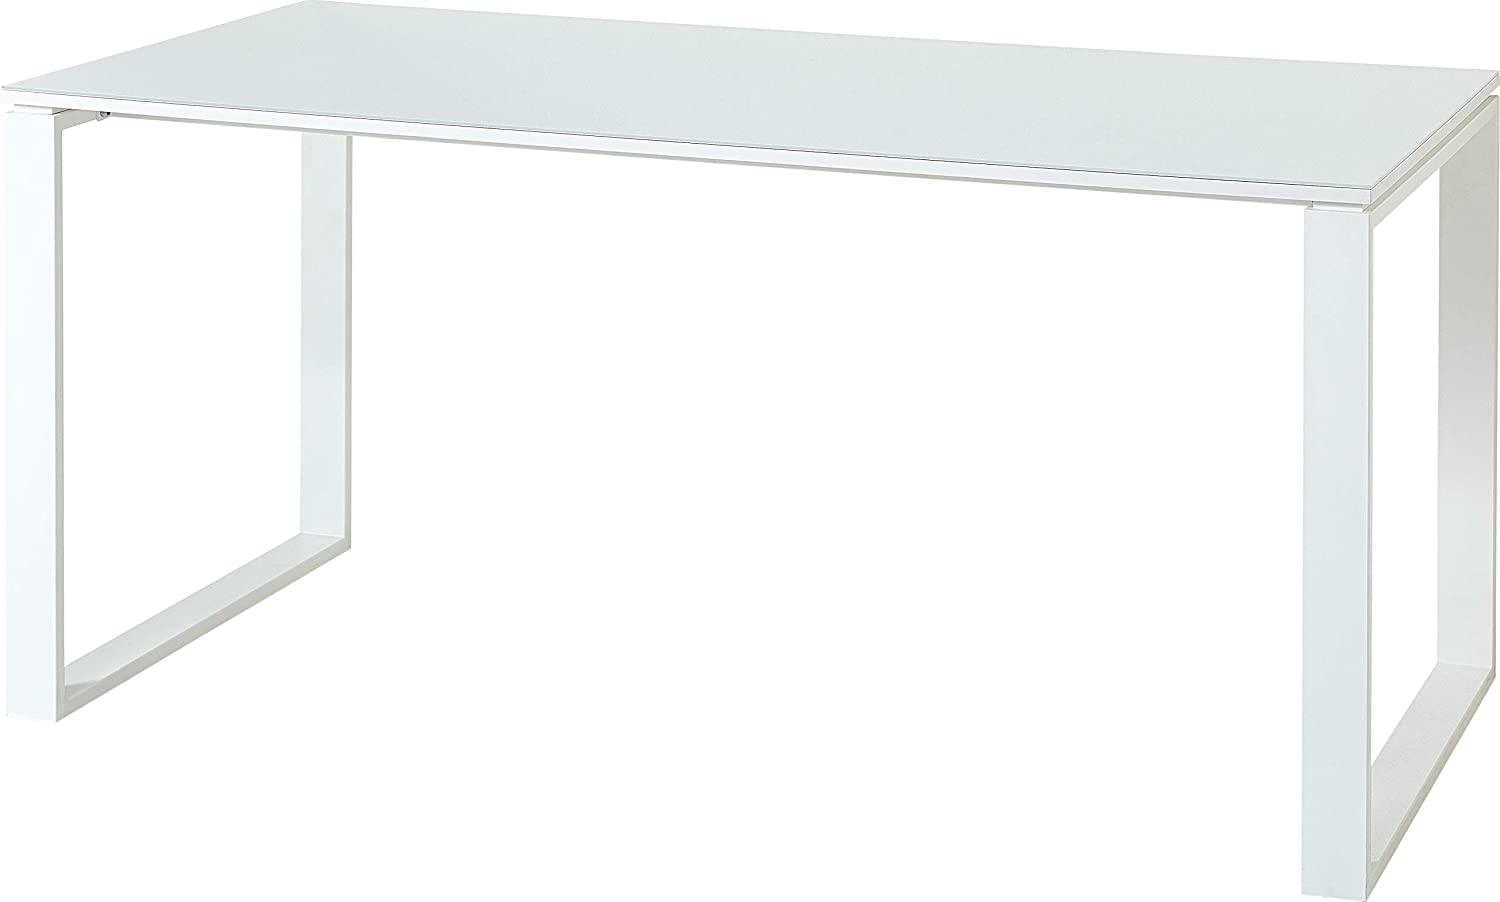 Amazon Marke - Alkove Schreibtisch Morena, ideal für Home Office, in Weiß, mit Glasauflage, 160 x 75 x 80 cm (BxHxT) Bild 1